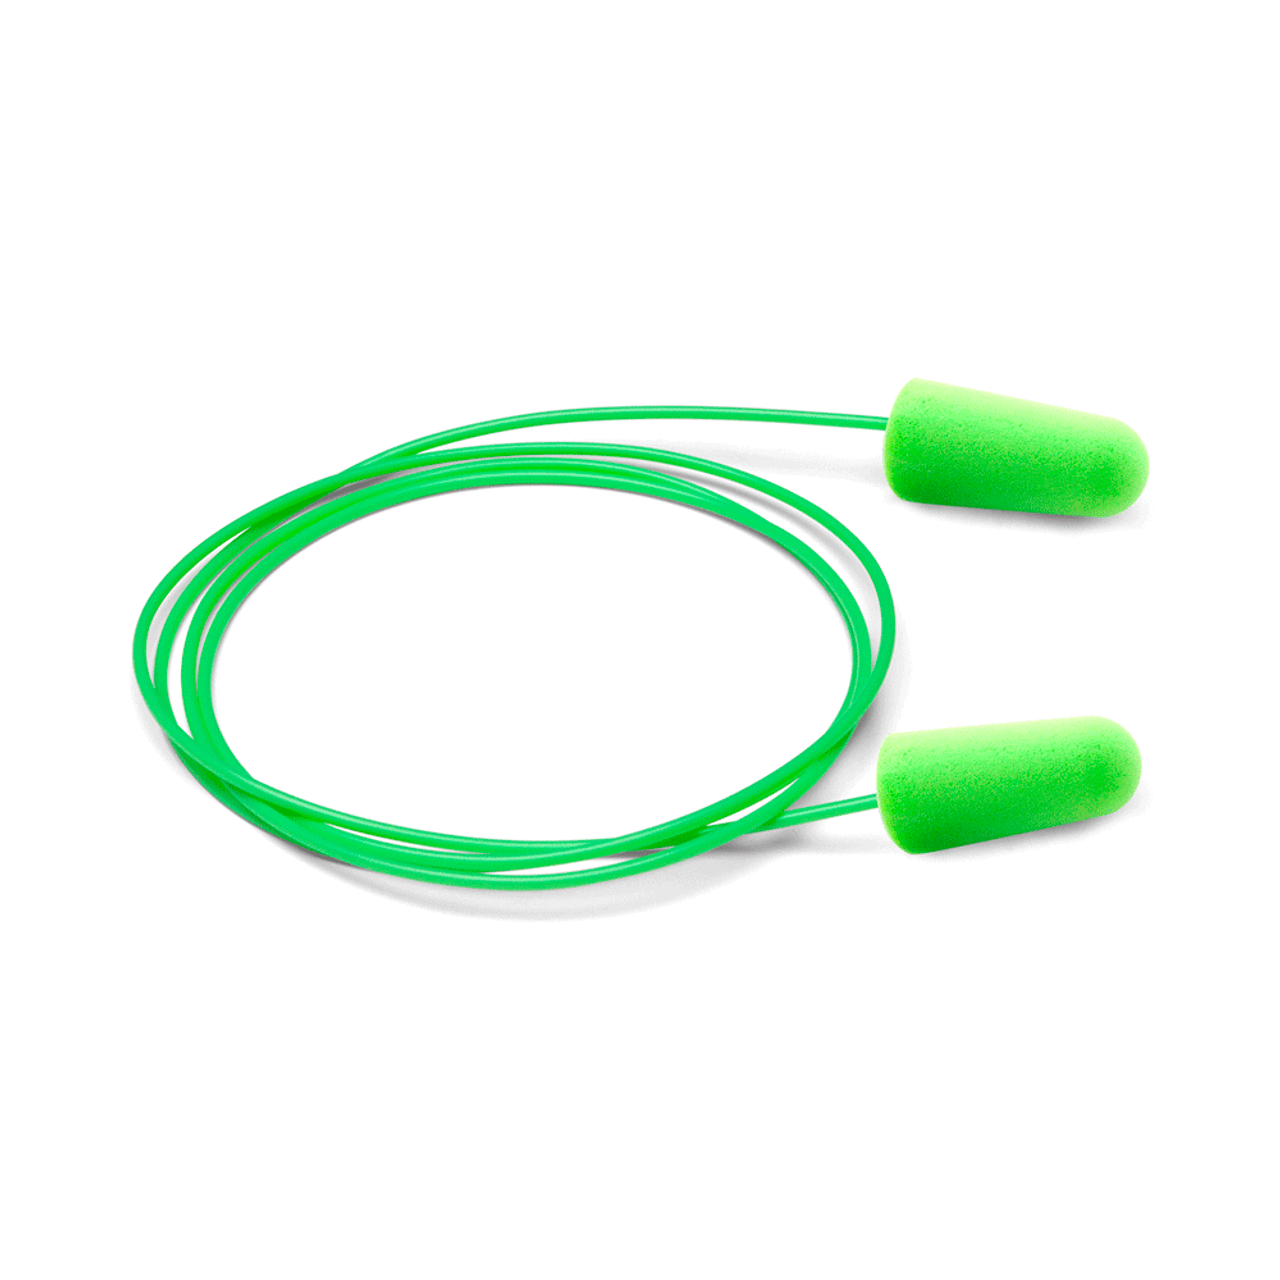 Moldex 6620 Goin Green Tapones para los oídos, sin cable, 200 pares